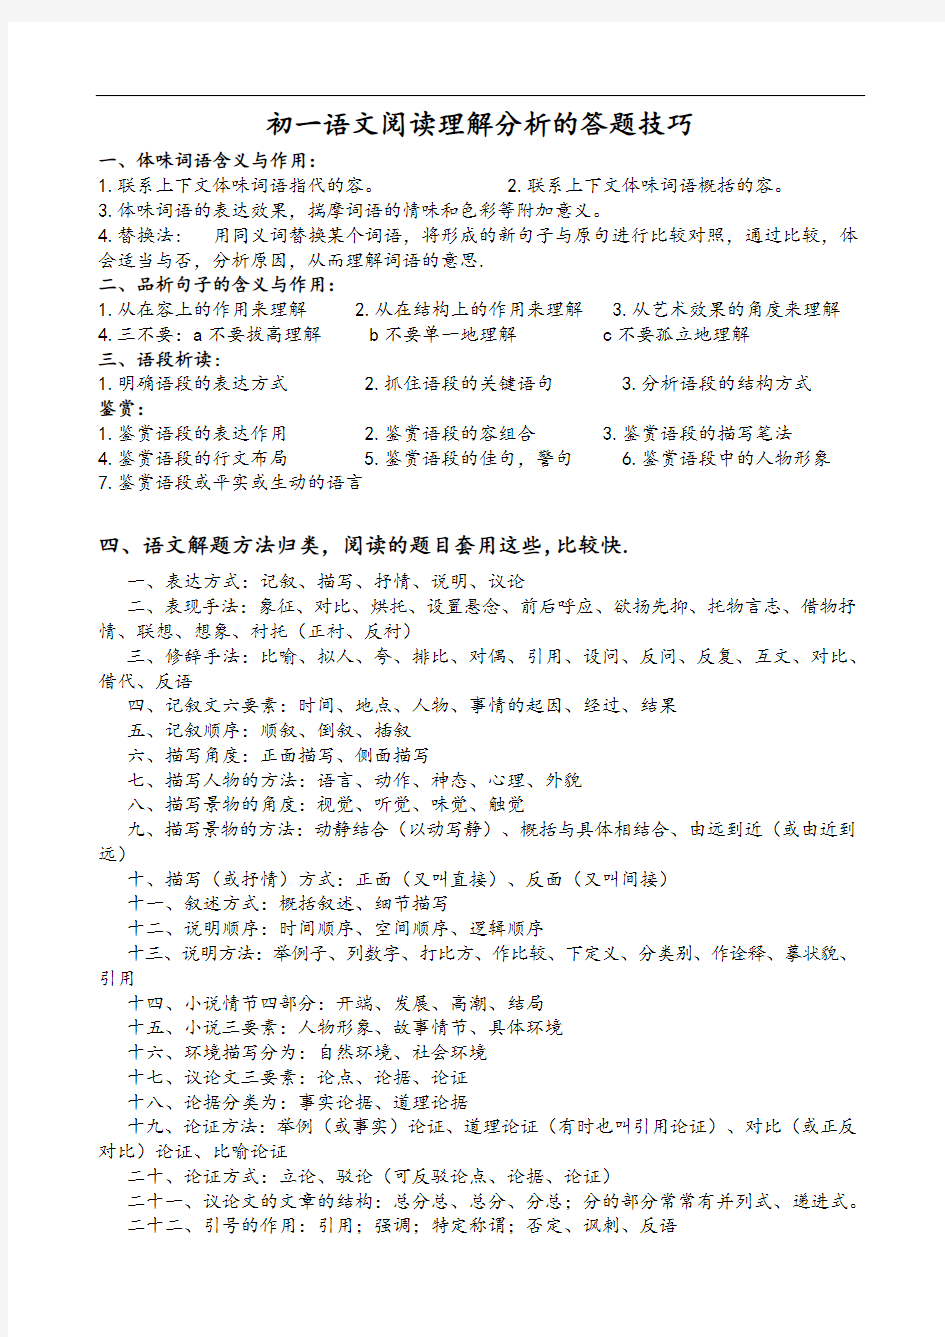 初中语文阅读理解分析资料报告地答题技巧